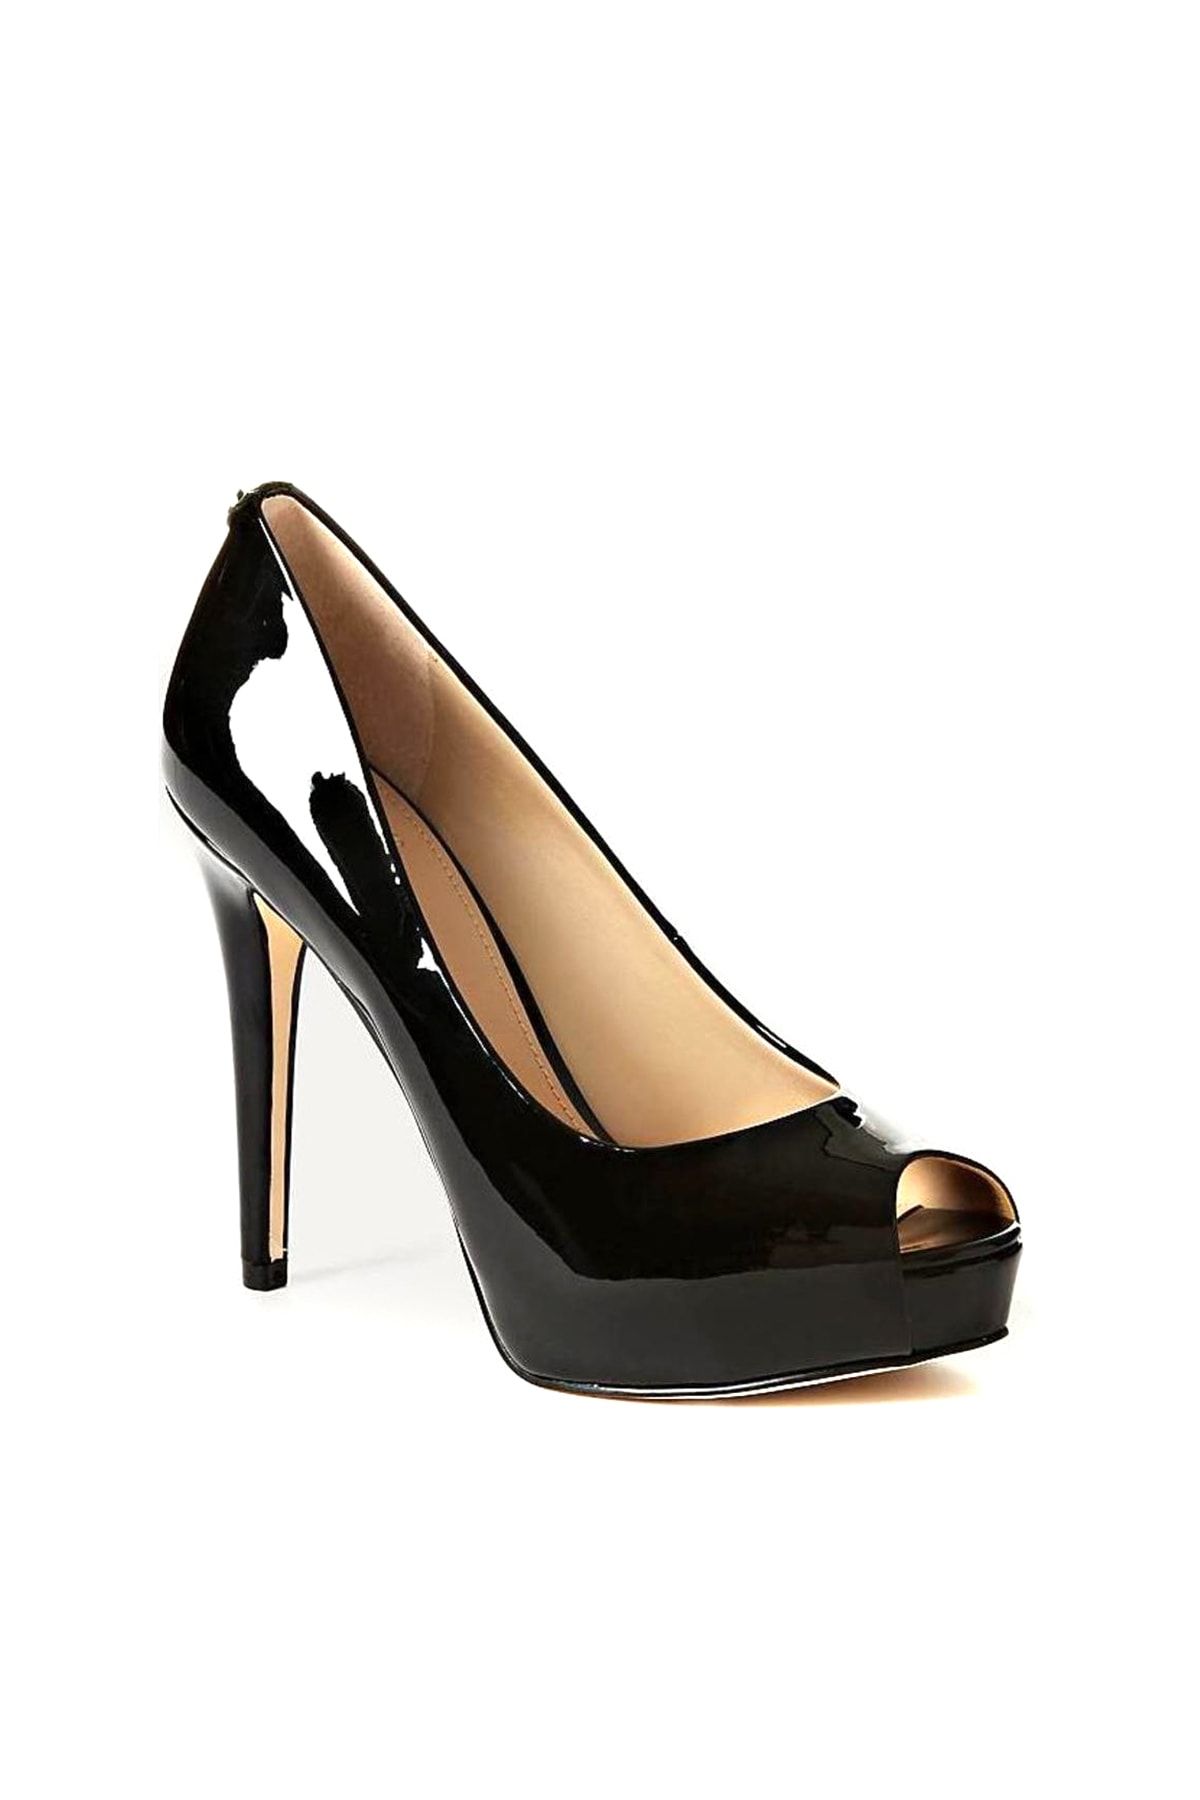 Guess Collection Kadın Siyah Klasik Topuklu Ayakkabı FLHA14PAF07